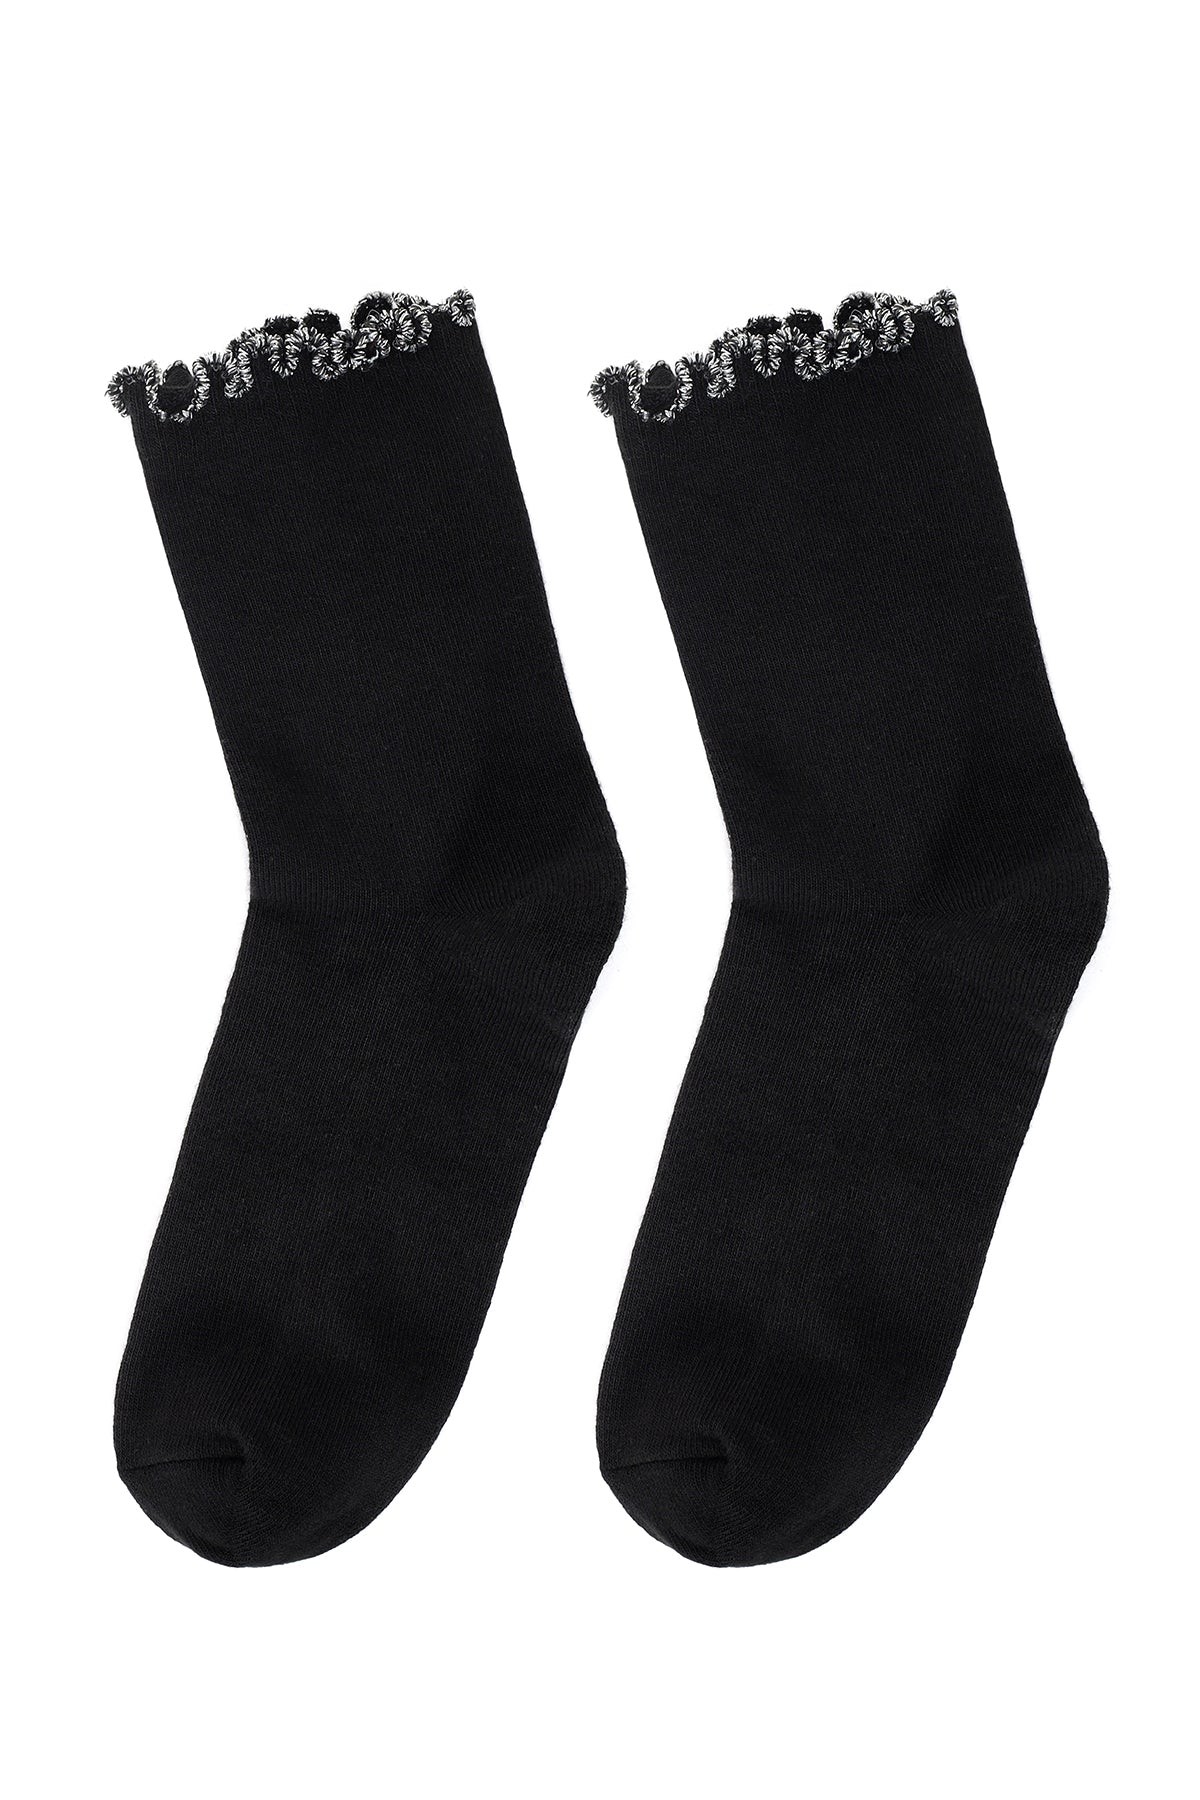 Kadın Siyah Altın Pamuk Çorap